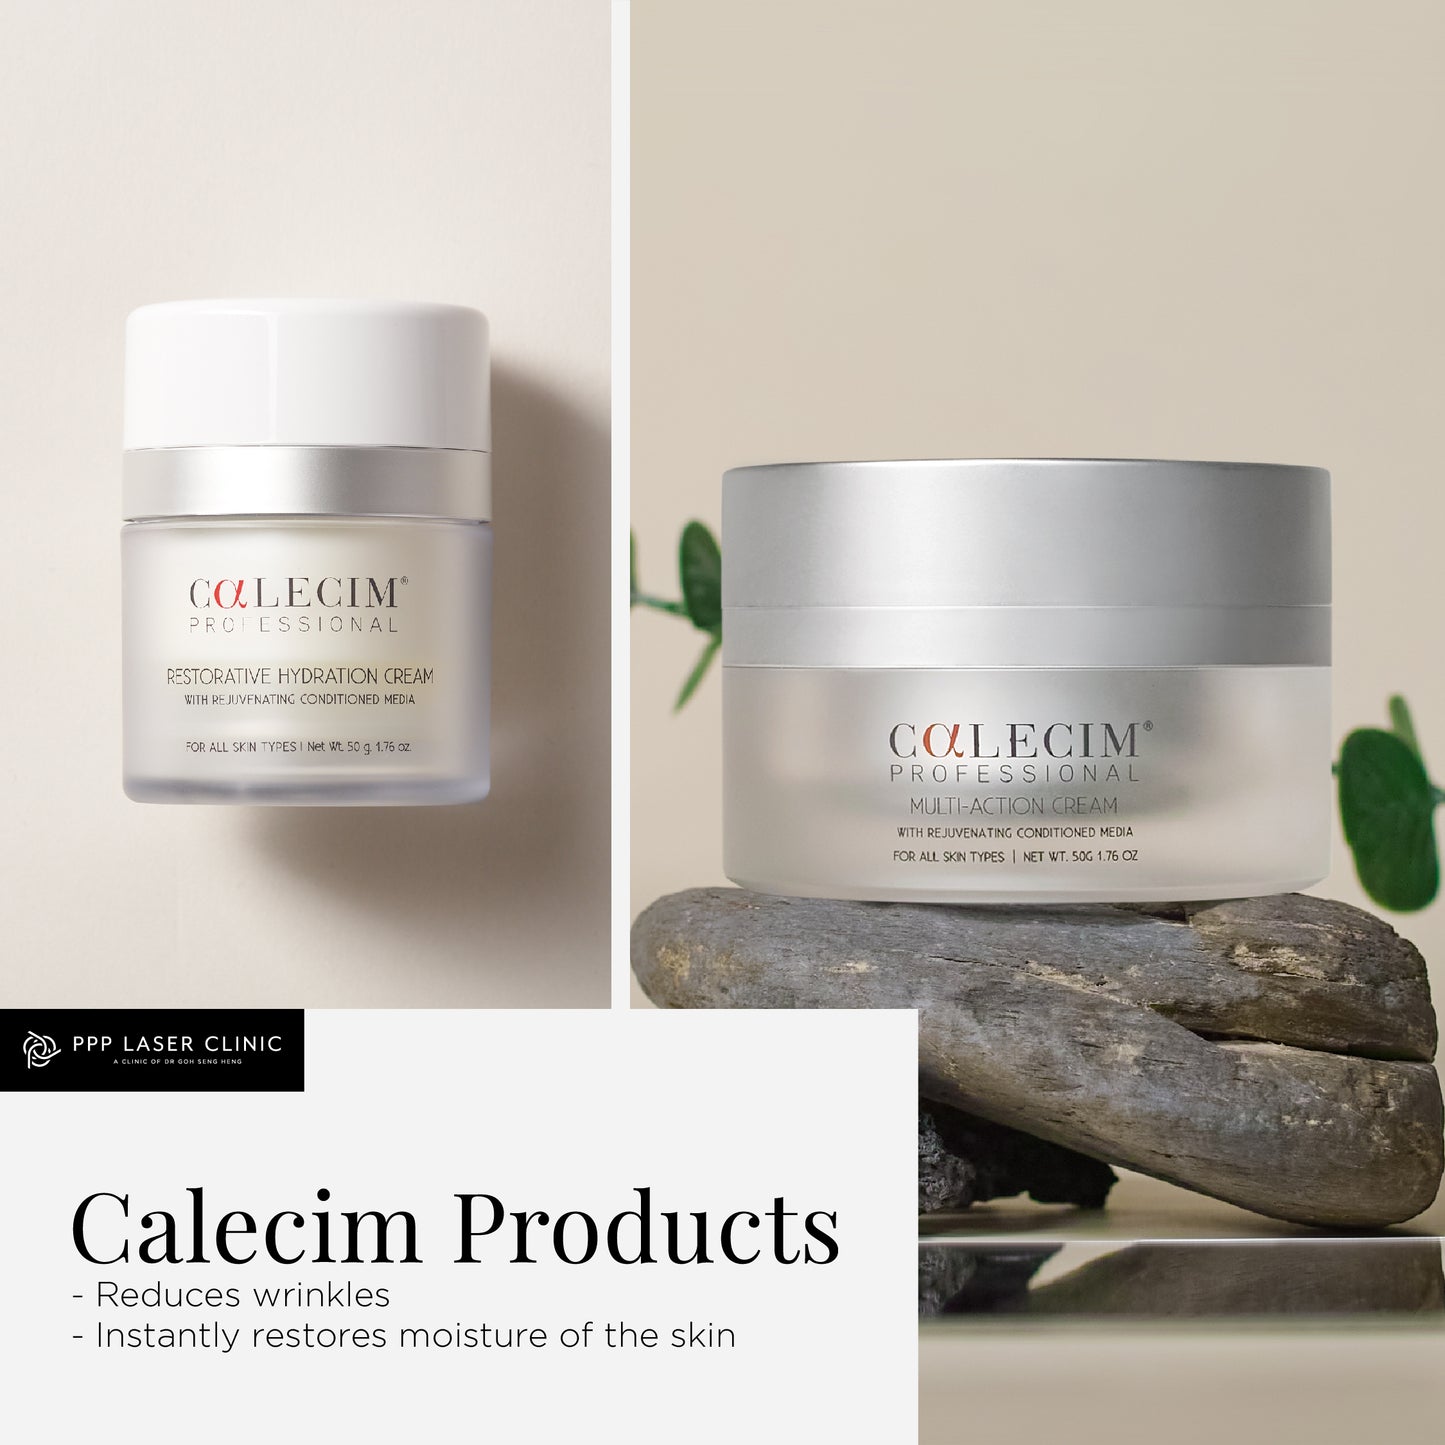 Calecim Product Duo